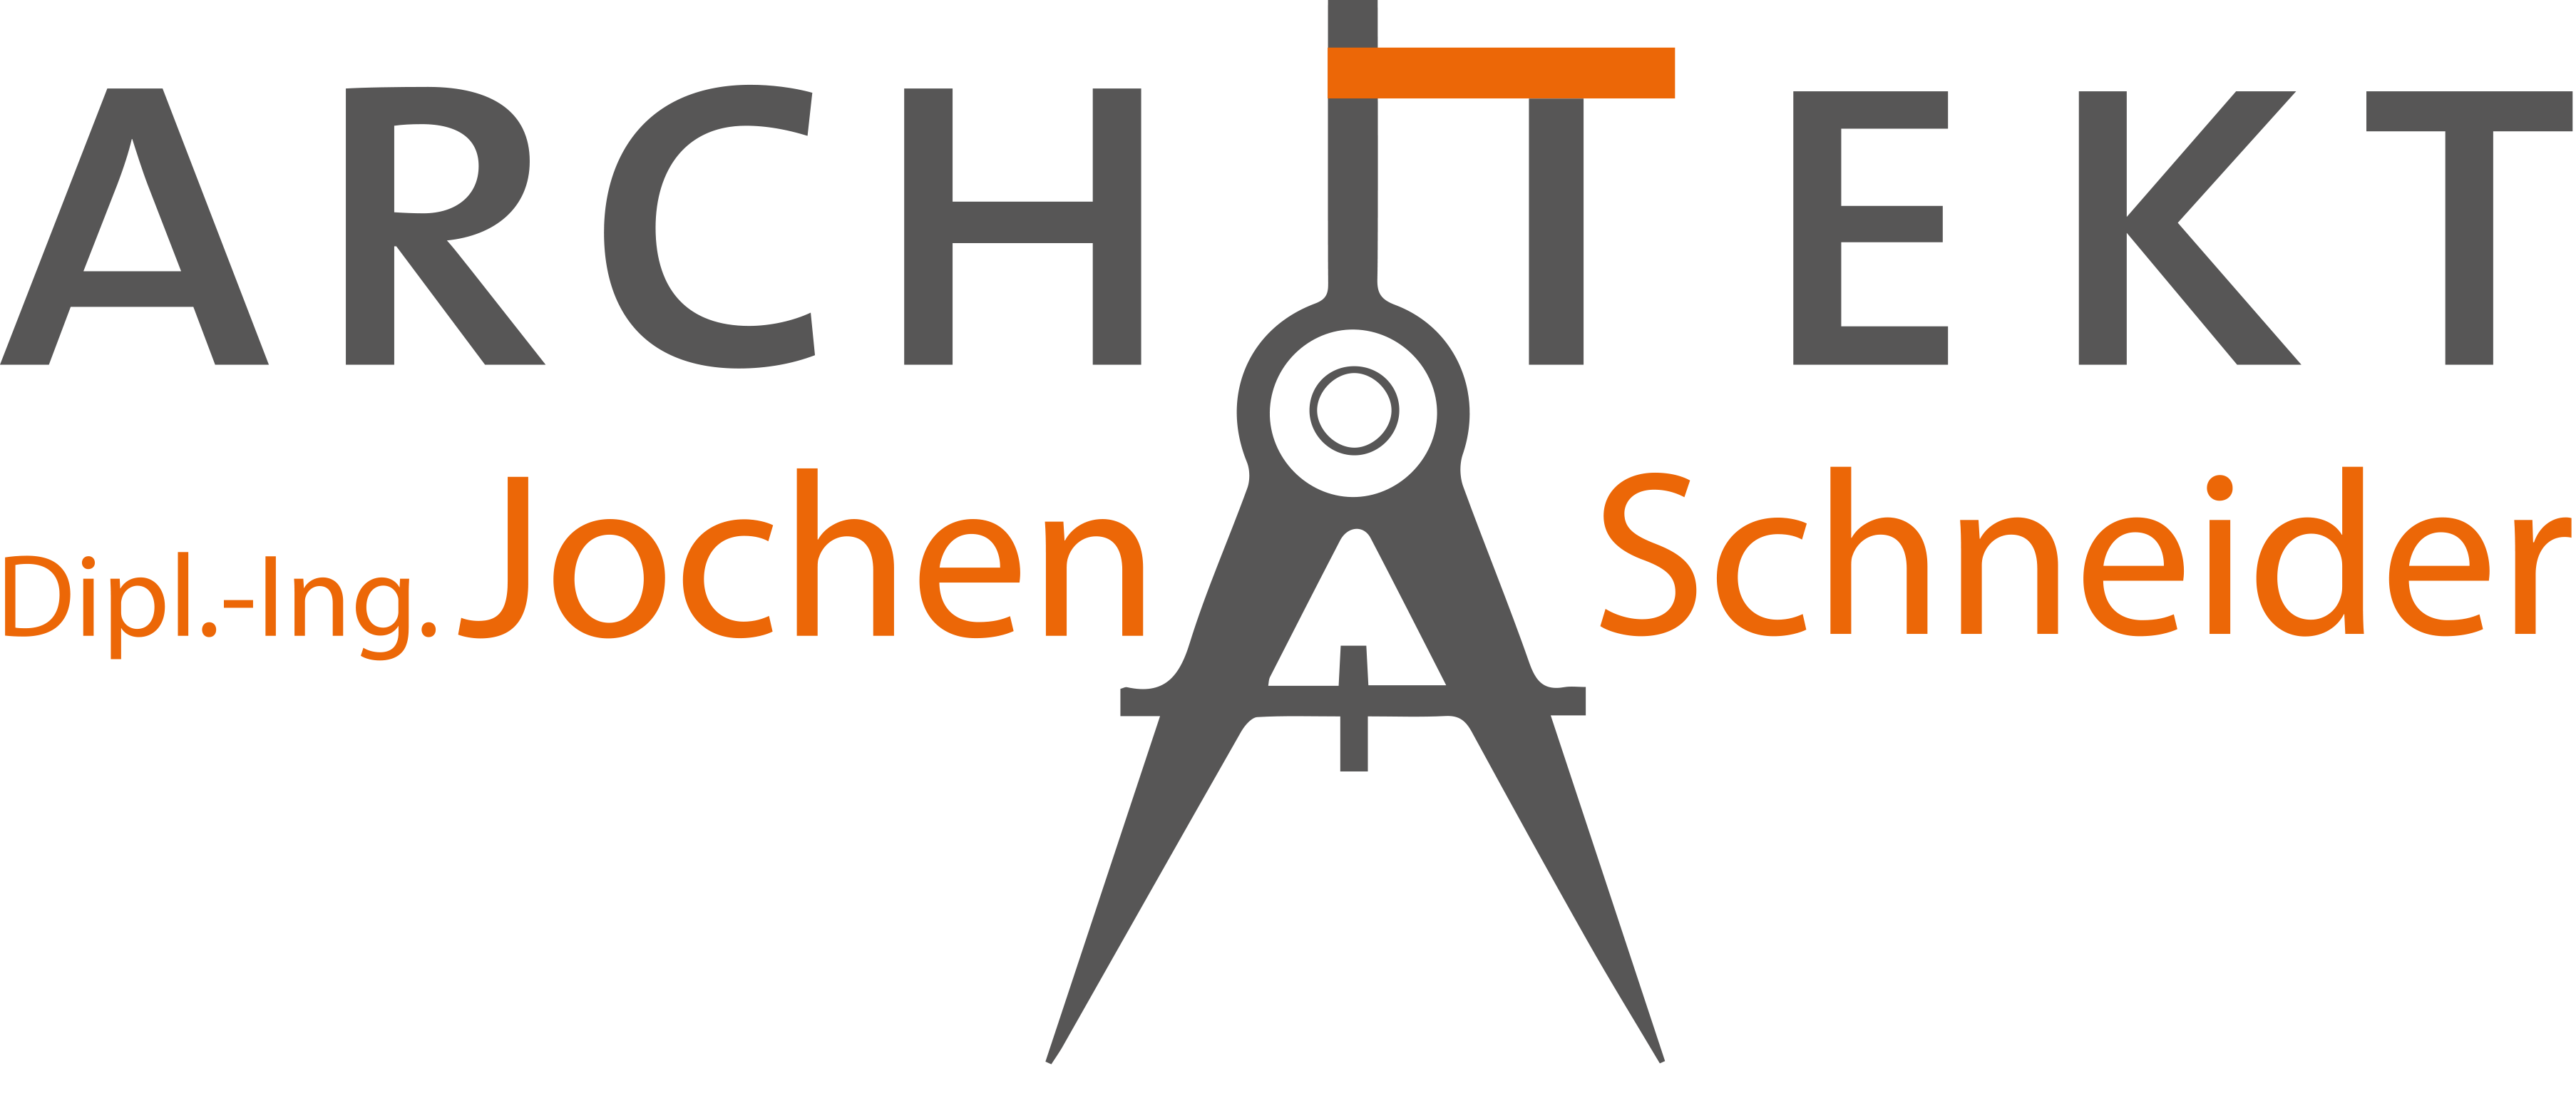 Freier Architekt - Jochen Schneider